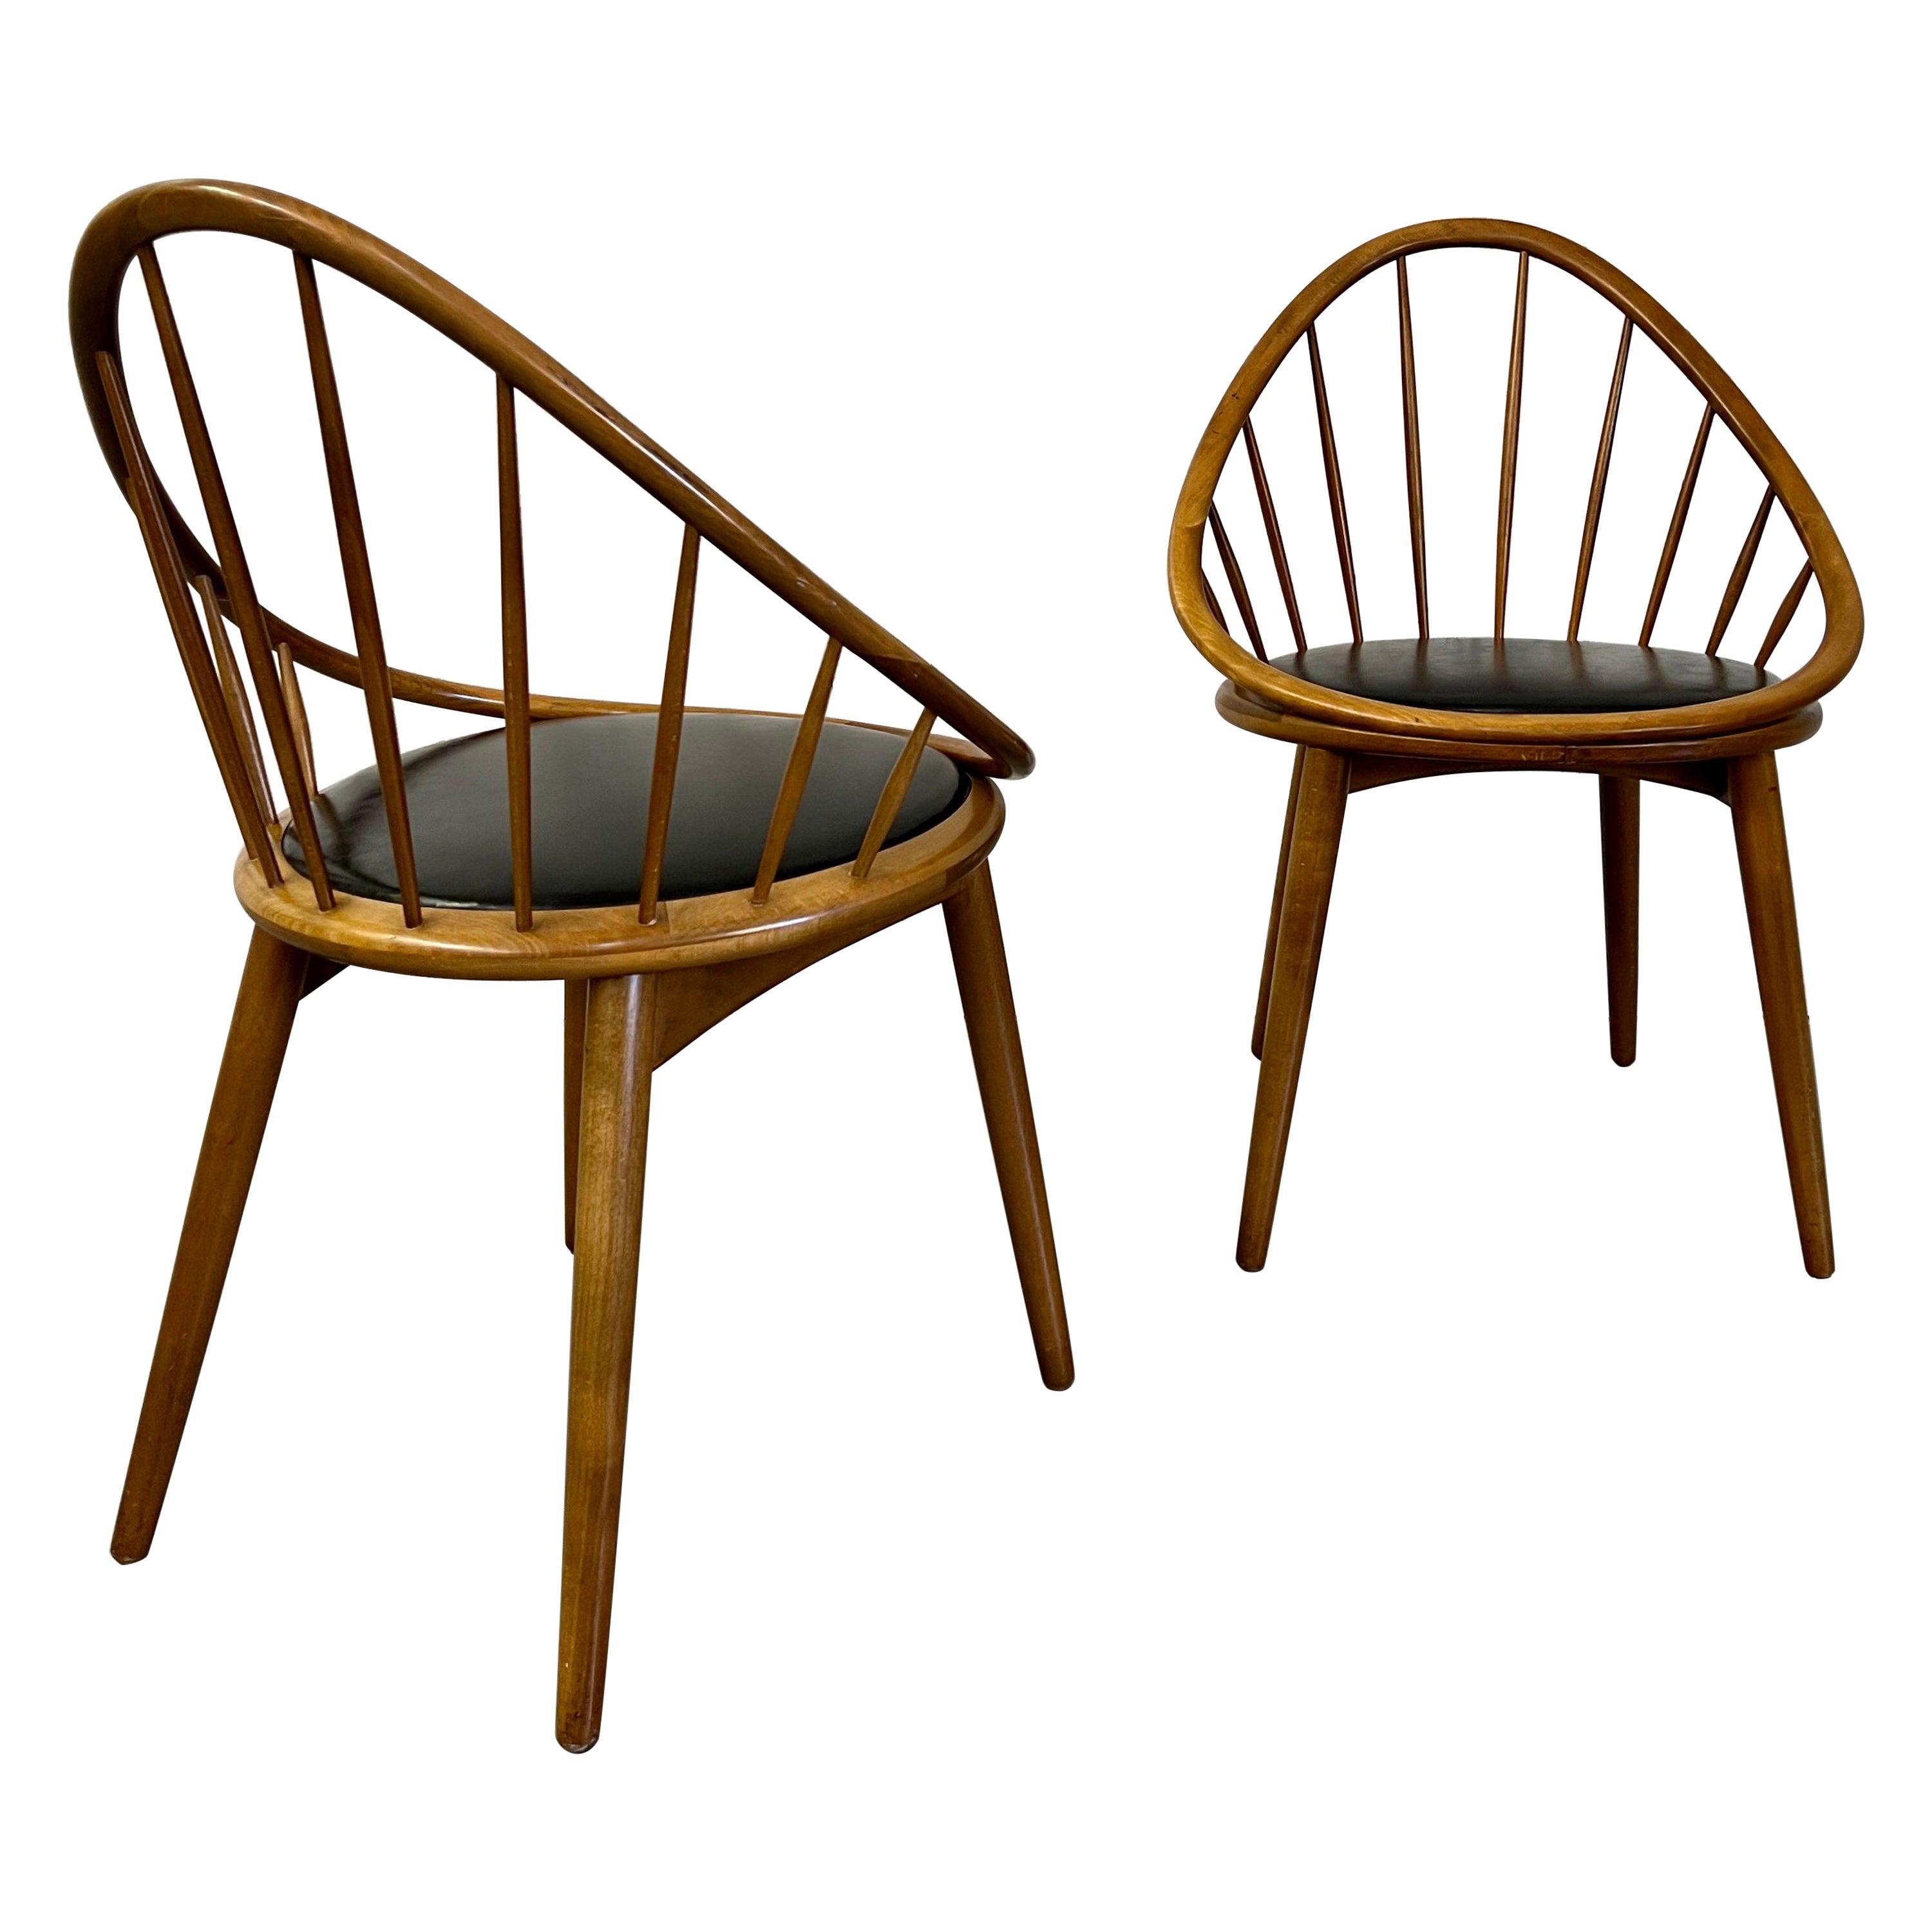 Petits fauteuils cerceau danois modernes